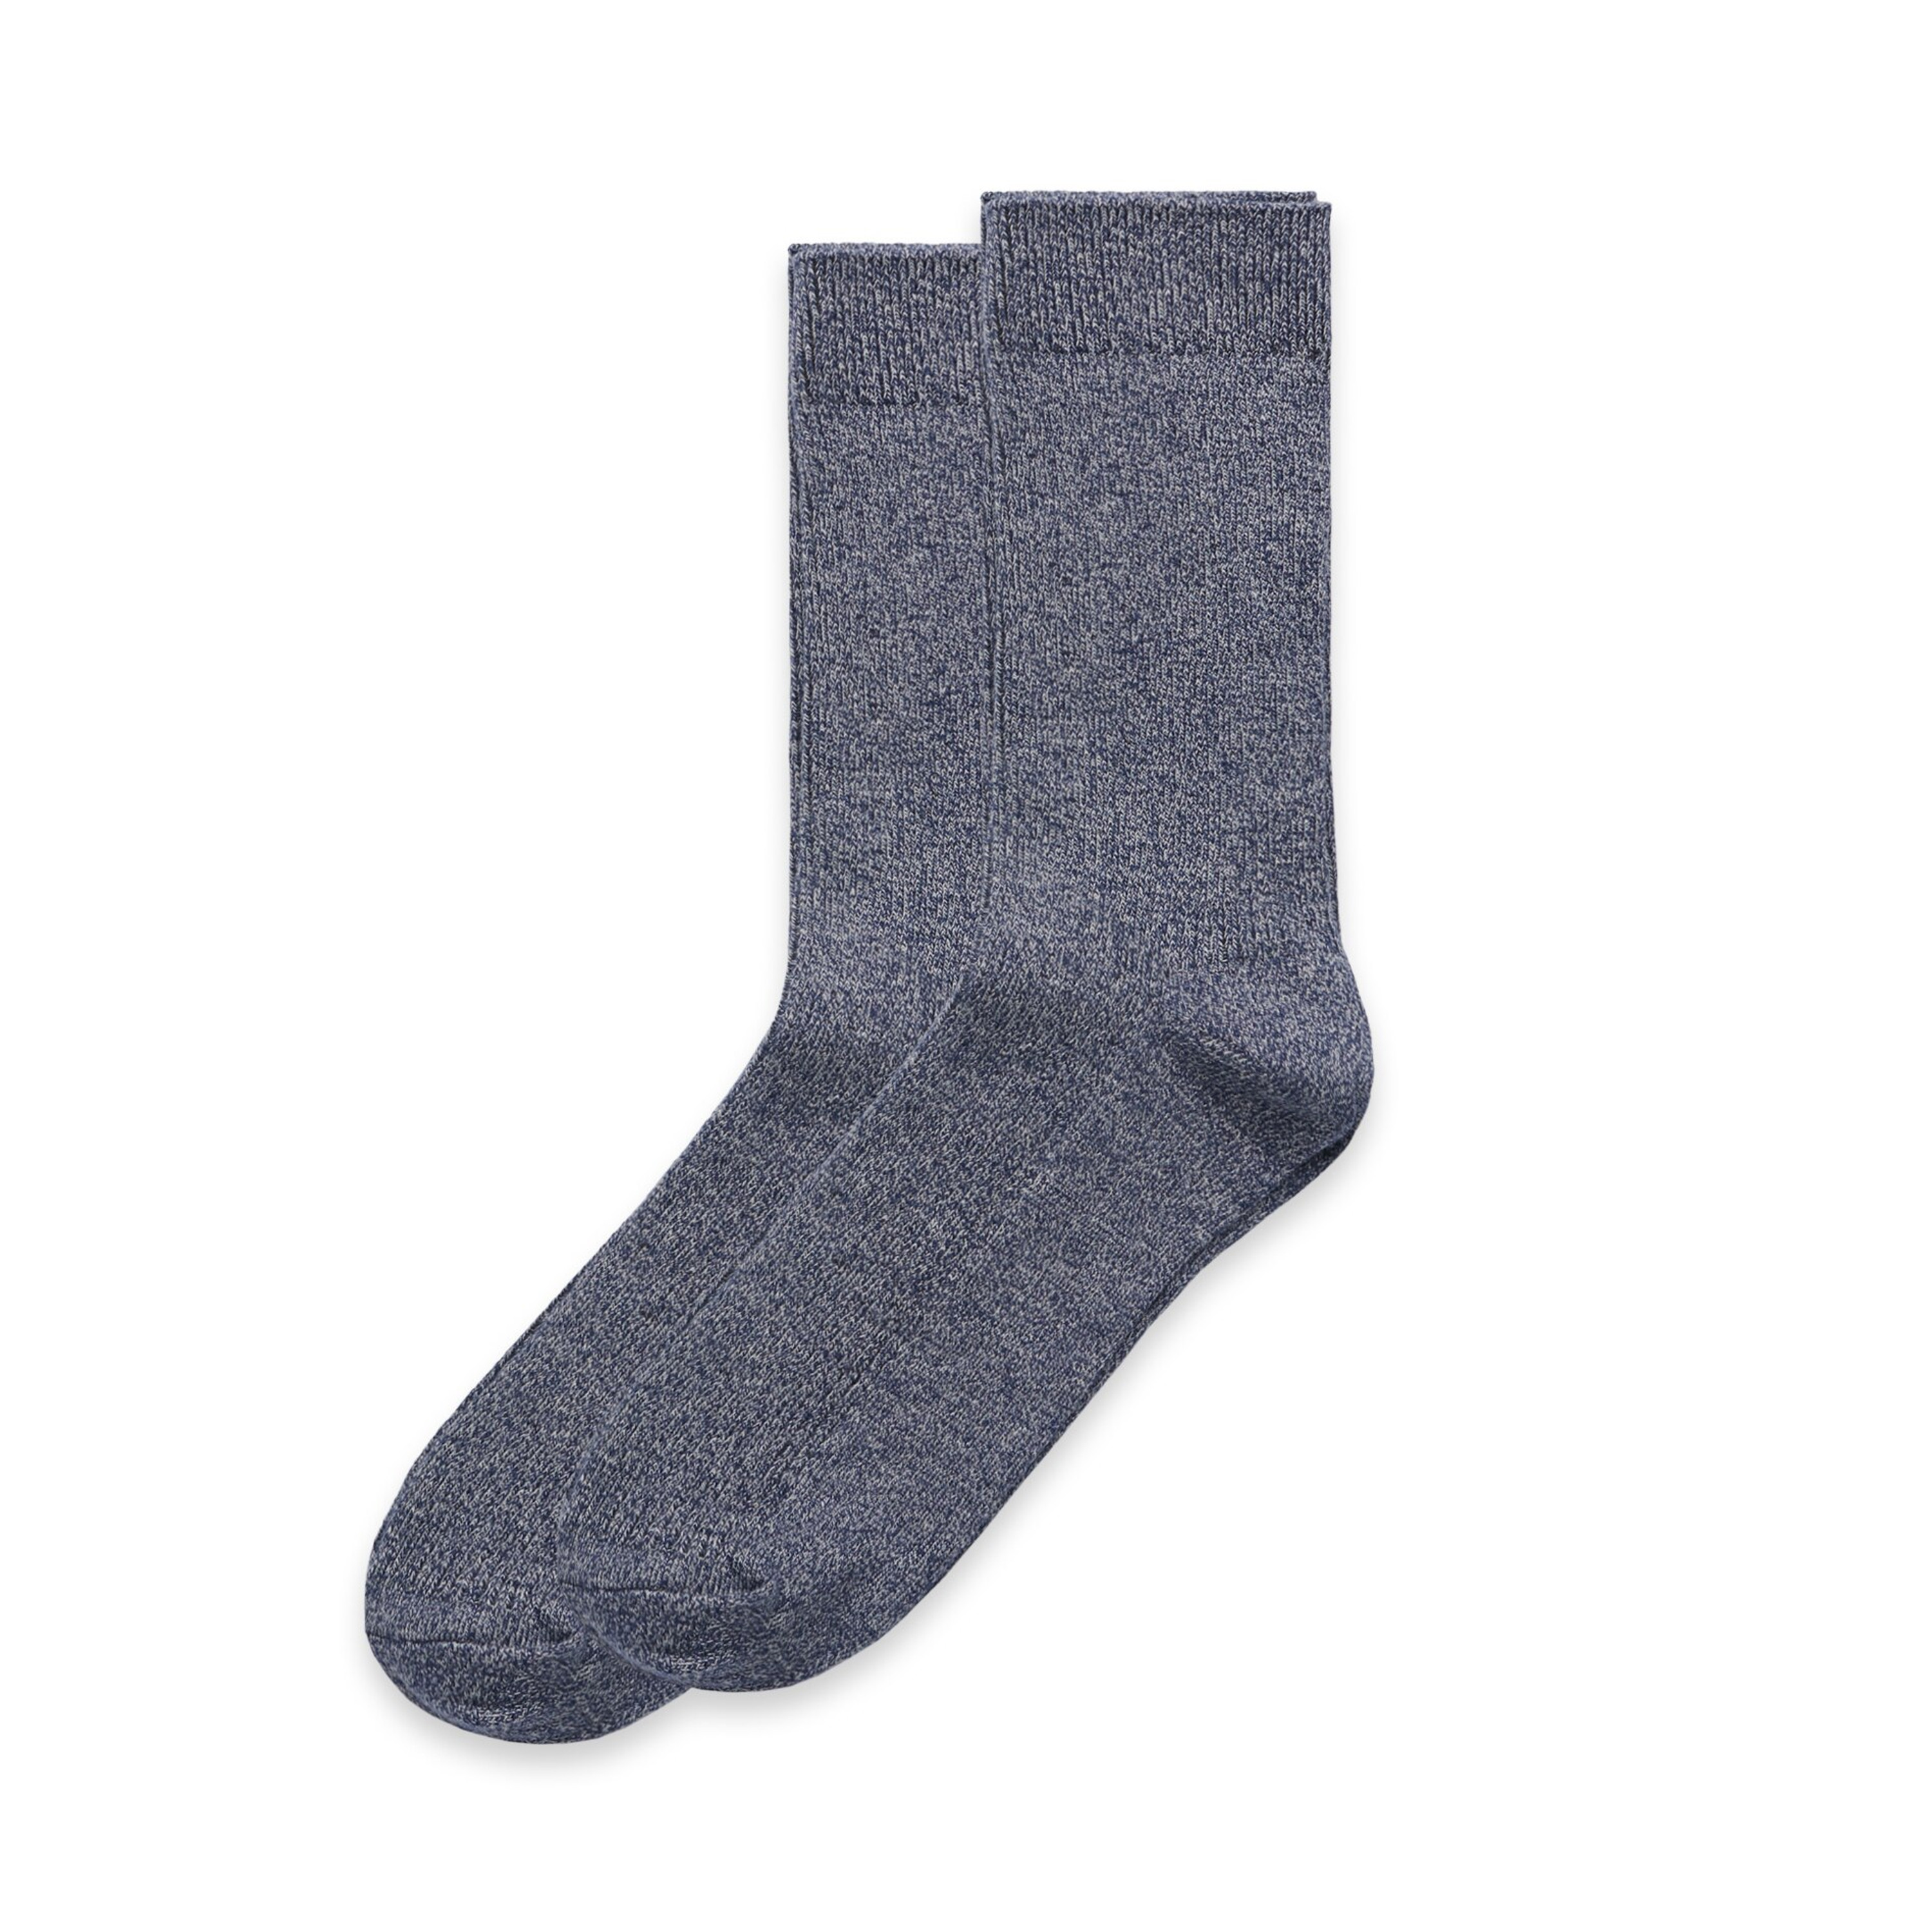 Marle Socks (2 Pairs) - 1205 - AS Colour NZ